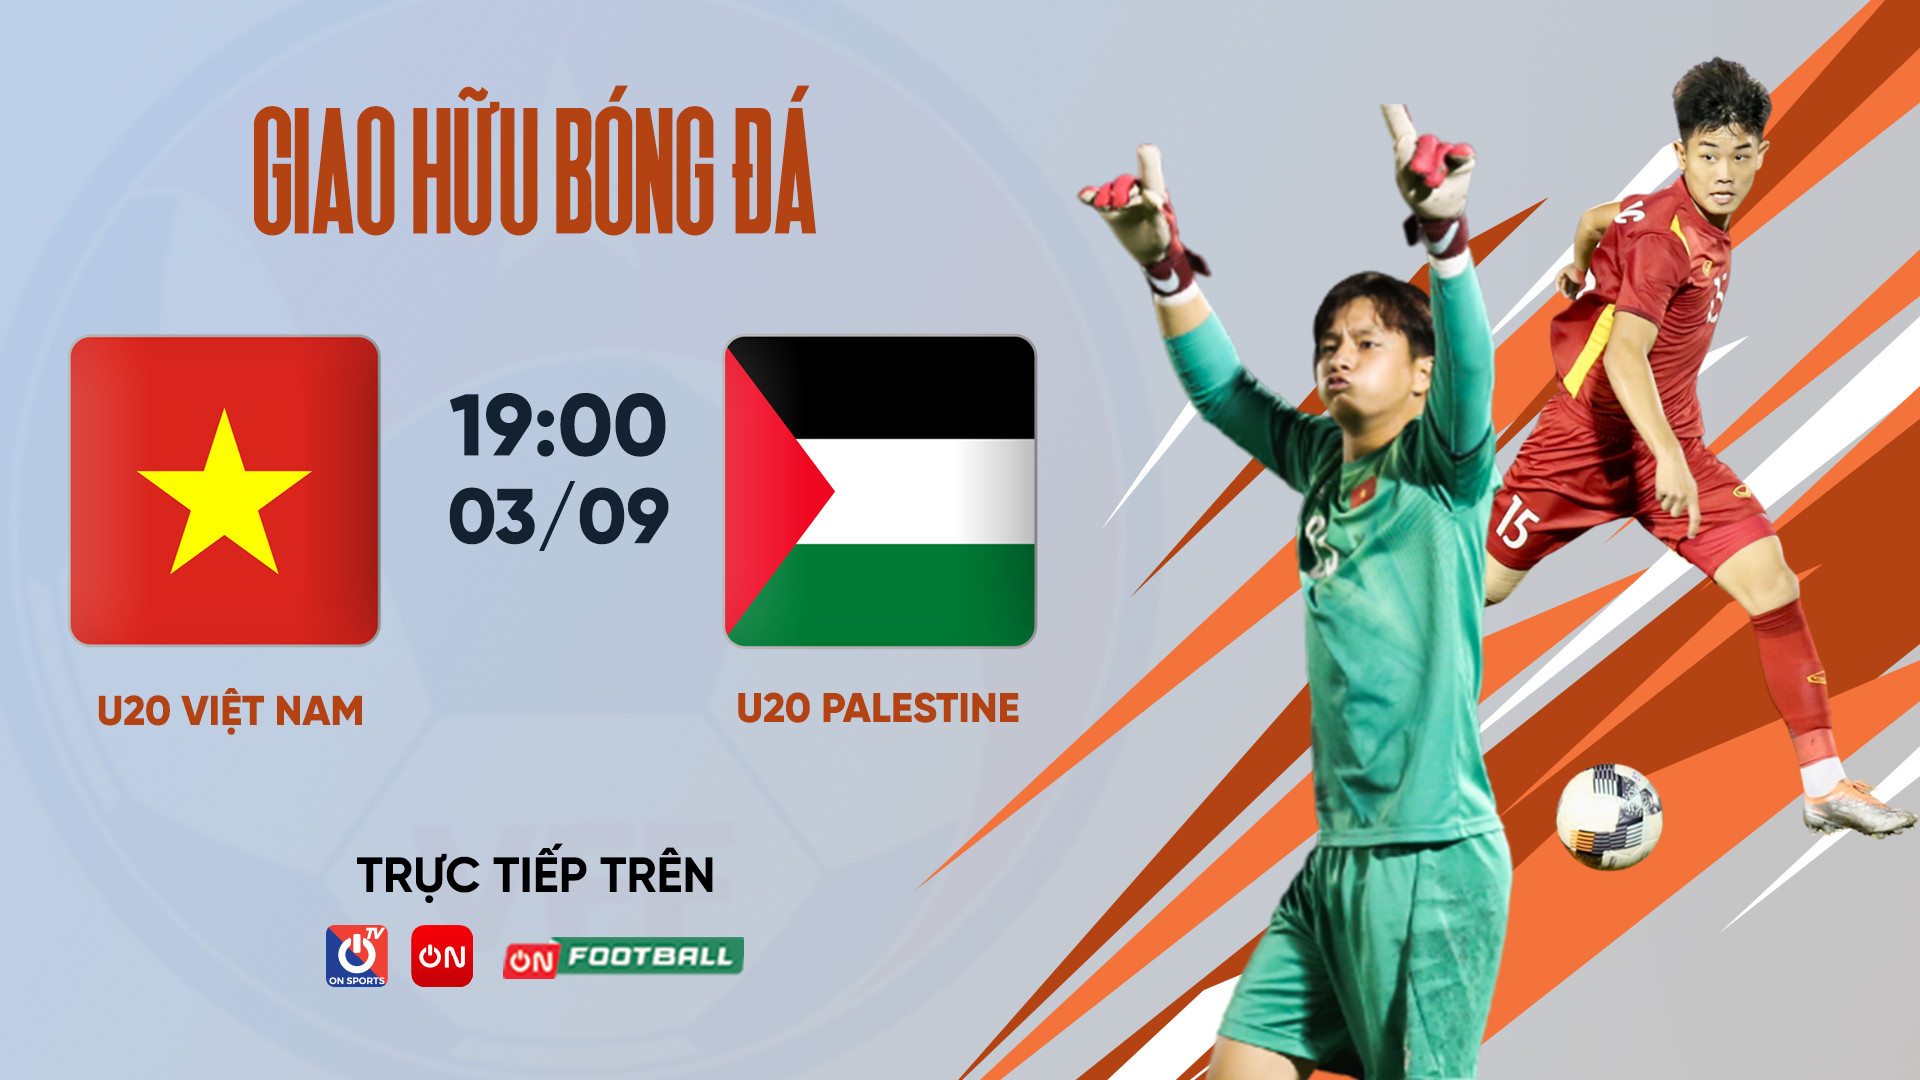 Xem trực tiếp U20 Việt Nam đấu U20 Palestine trên kênh nào? - Ảnh 3.